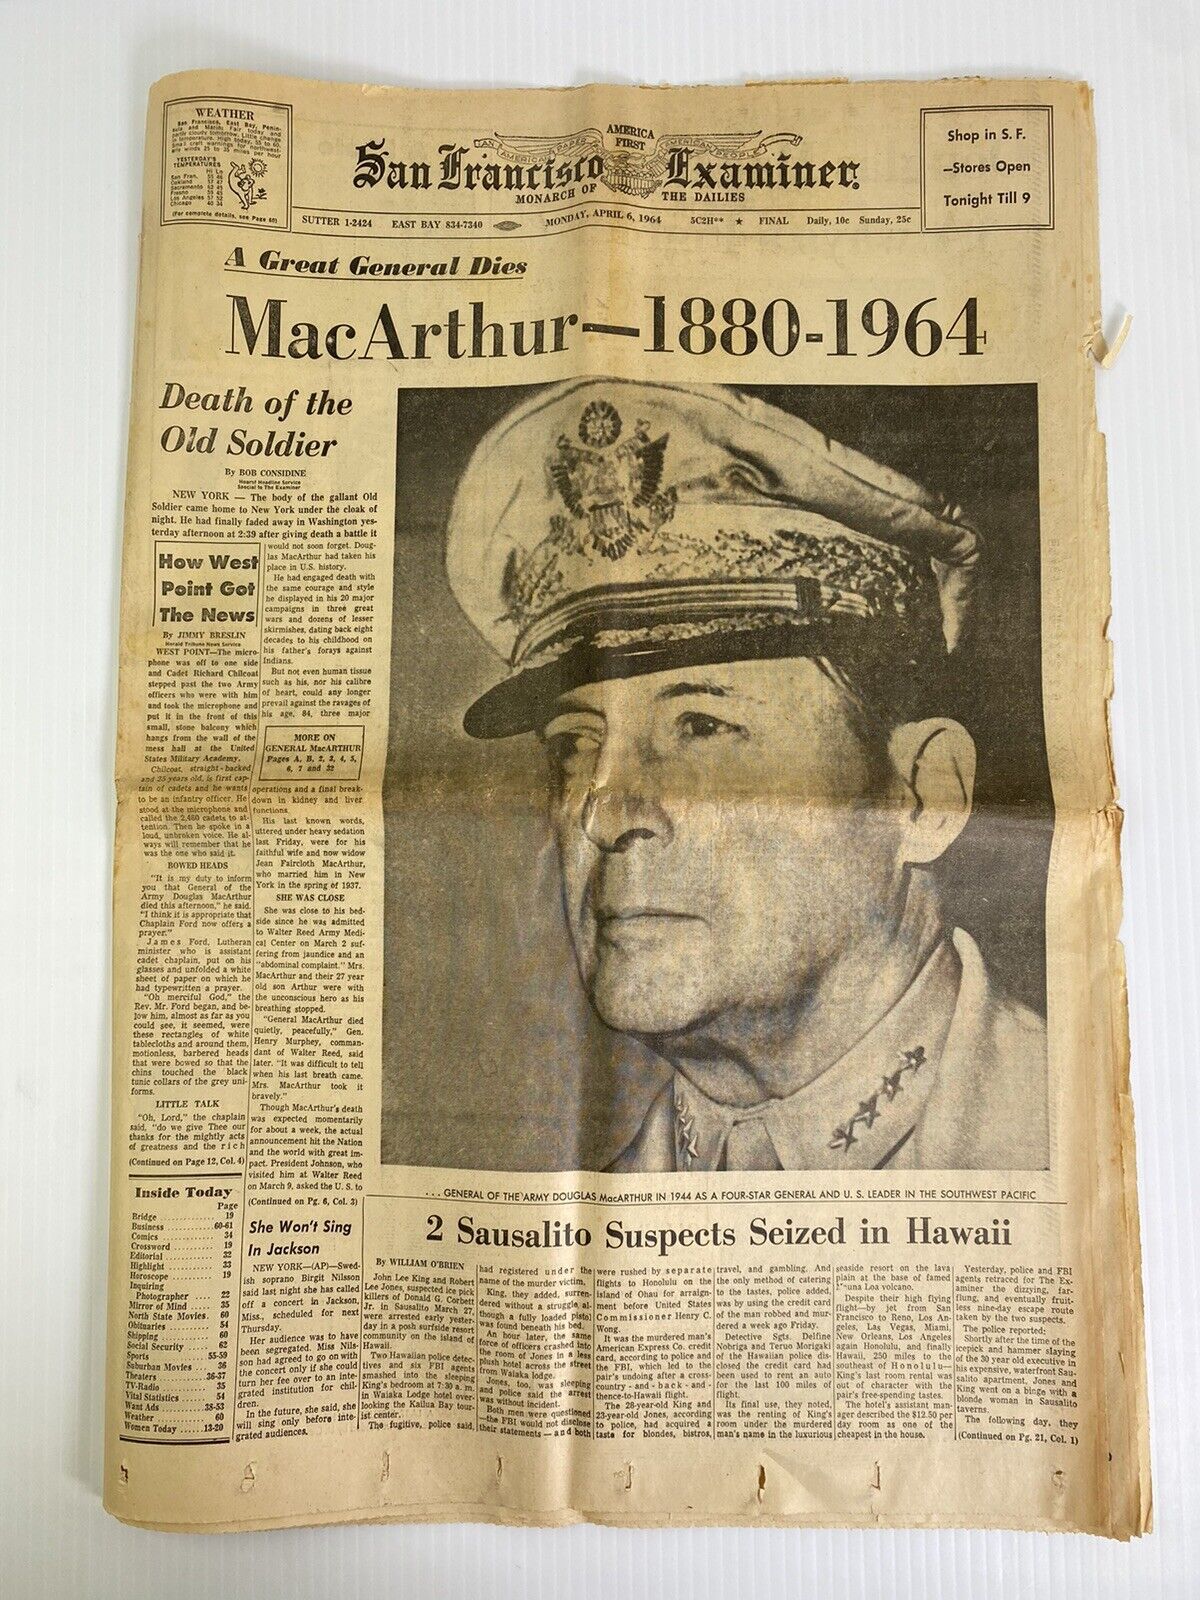 Vintage April 6 1964 San Francisco Examiner MacArthur - 1880-1964 Death